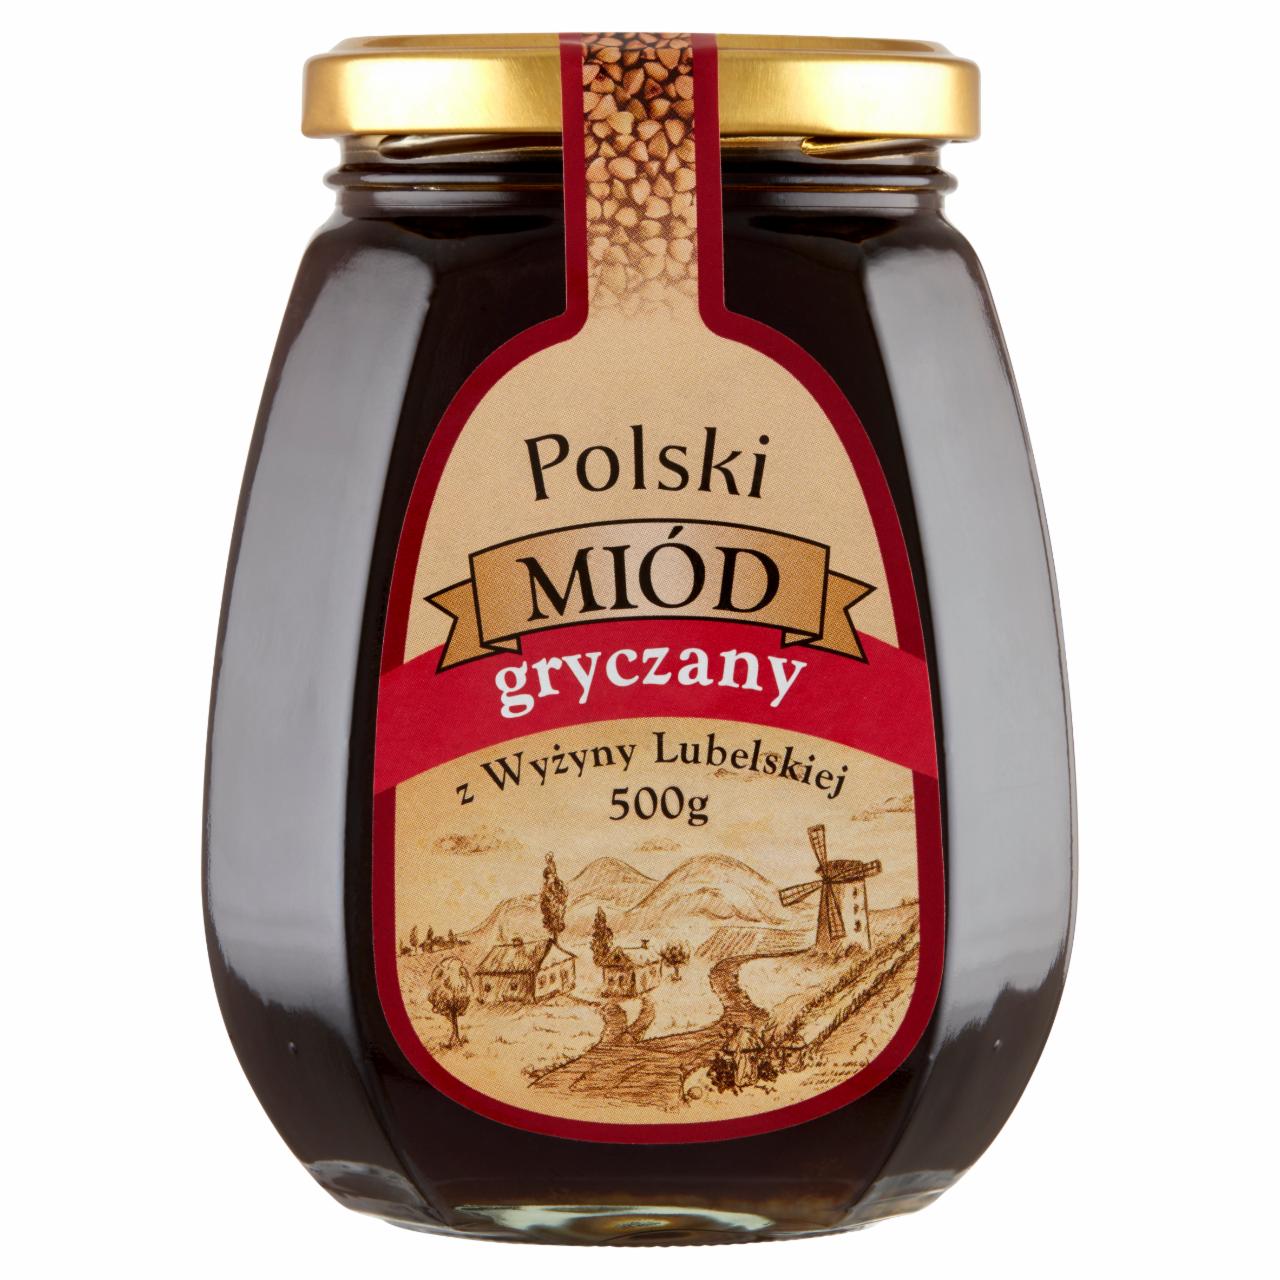 Zdjęcia - Polski miód nektarowy gryczany 500 g